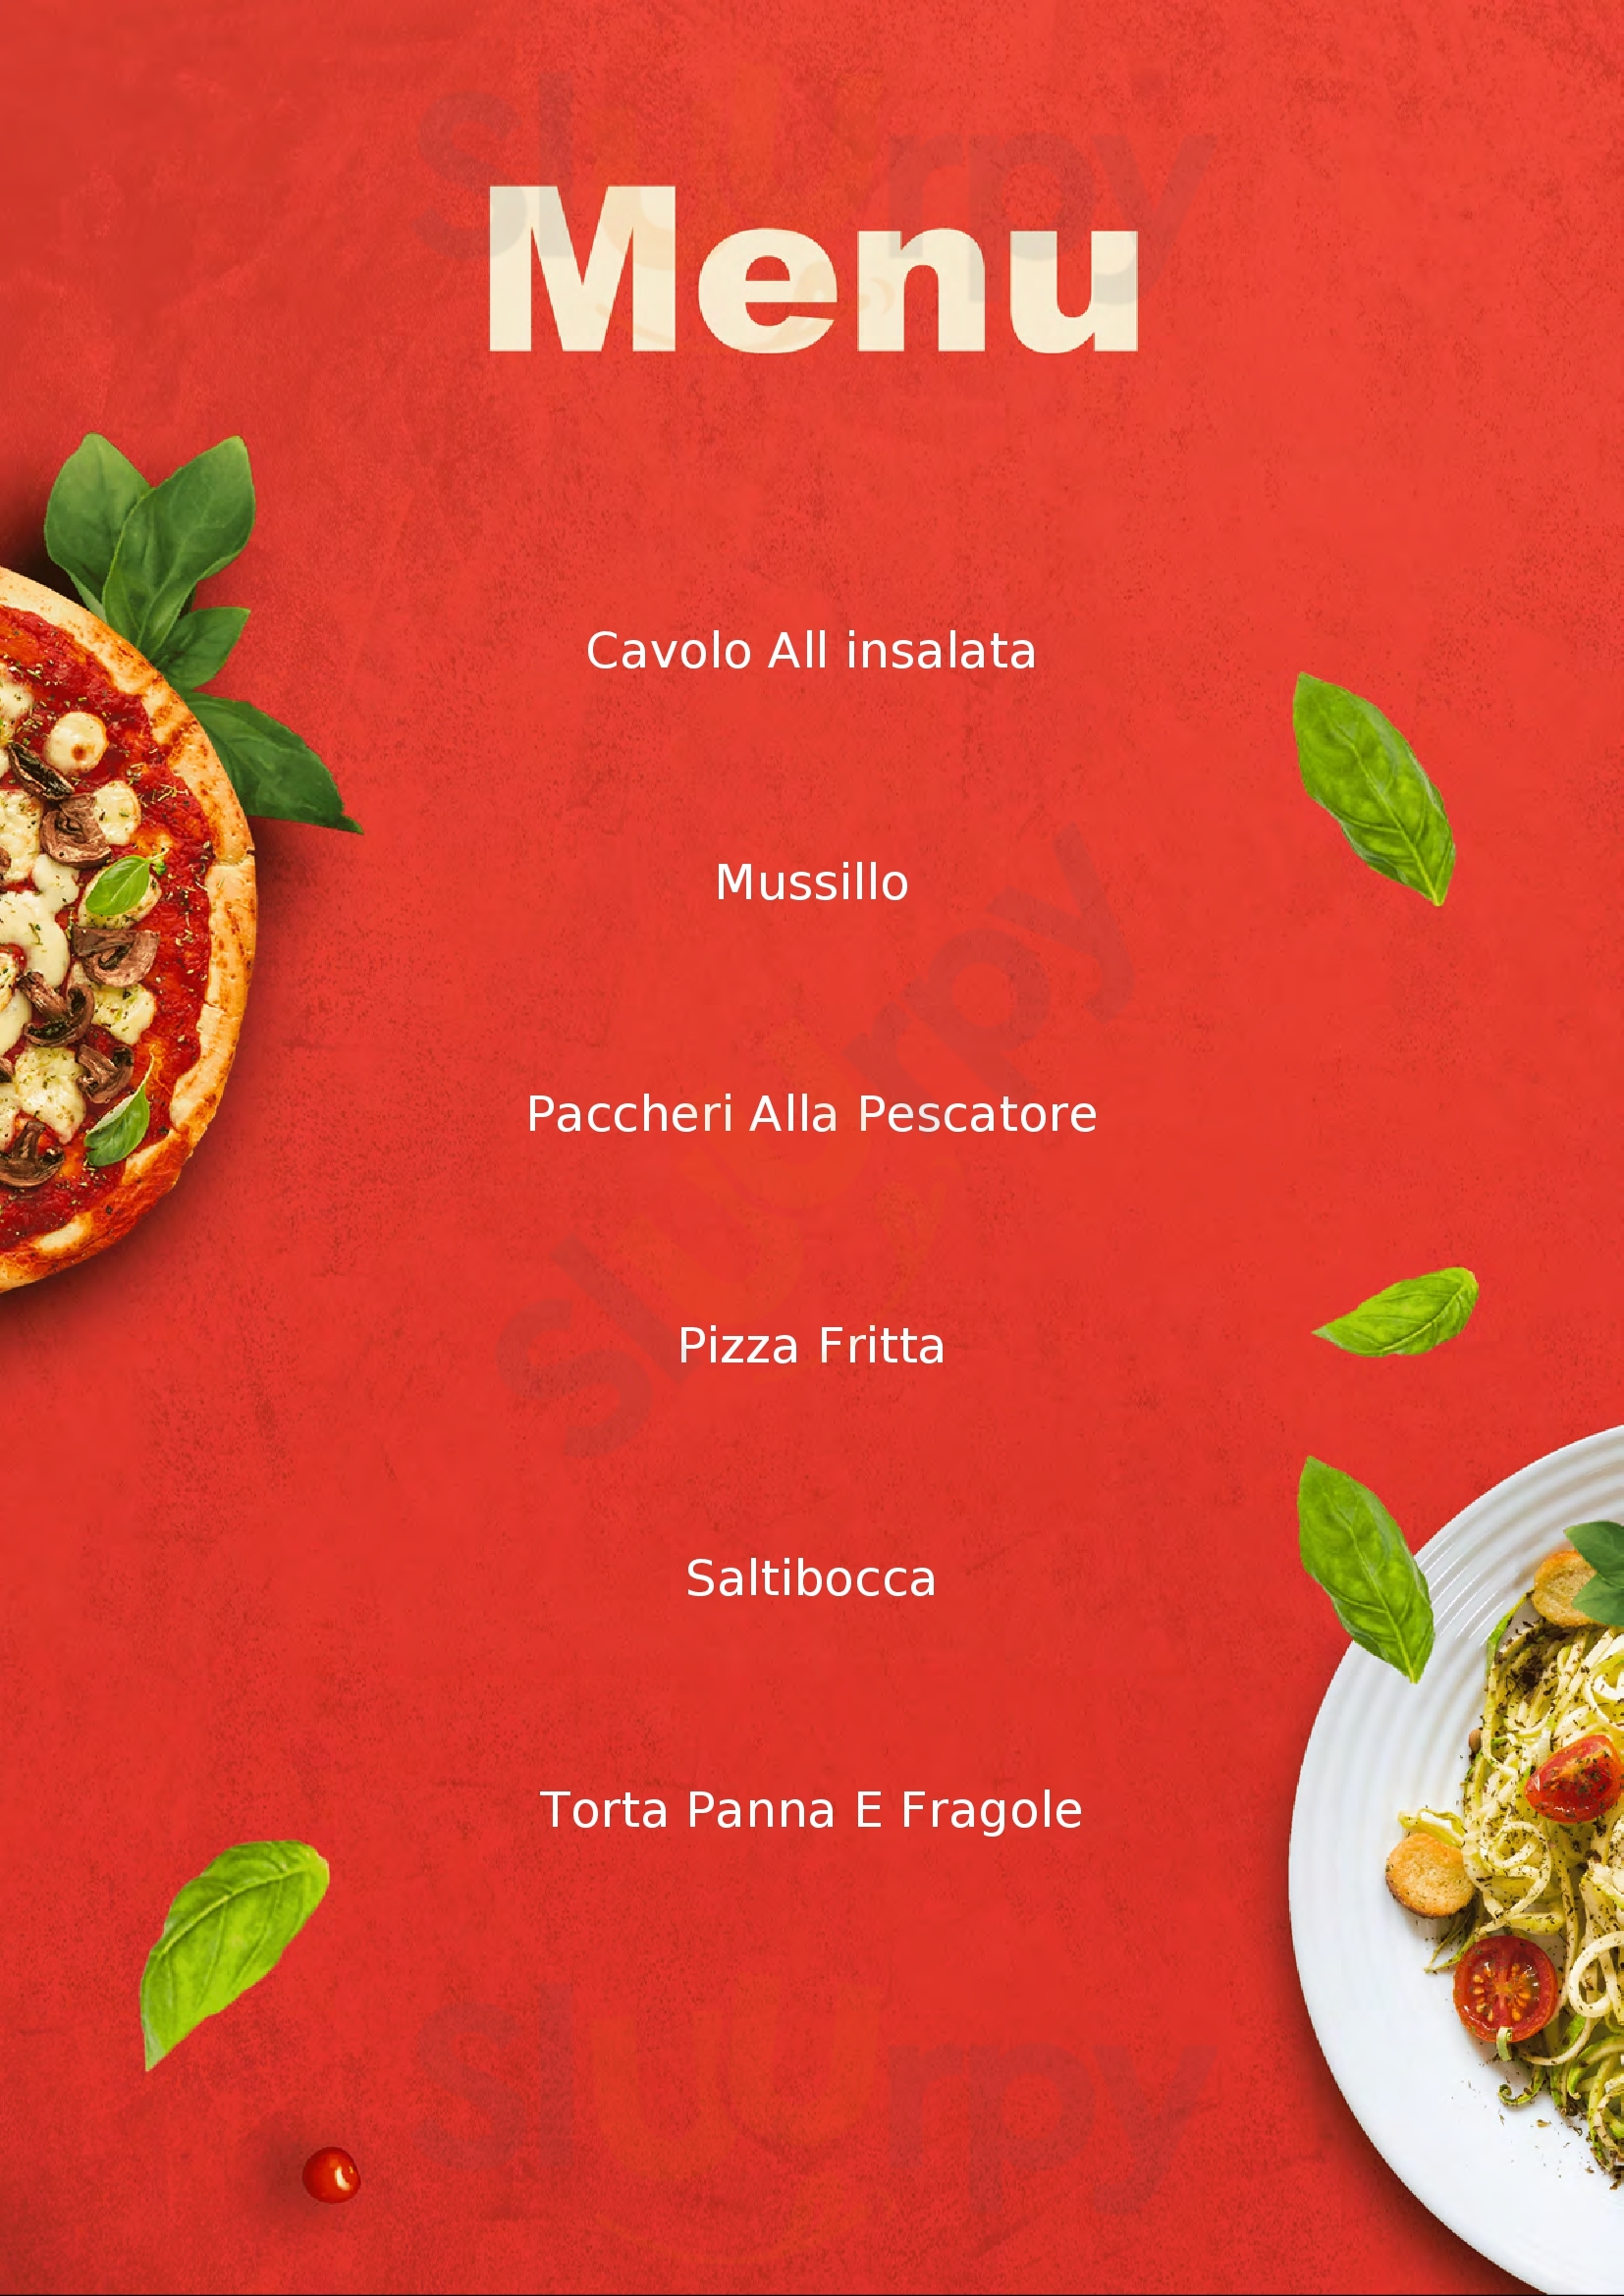 Pizzeria Scorza Ciro Napoli menù 1 pagina